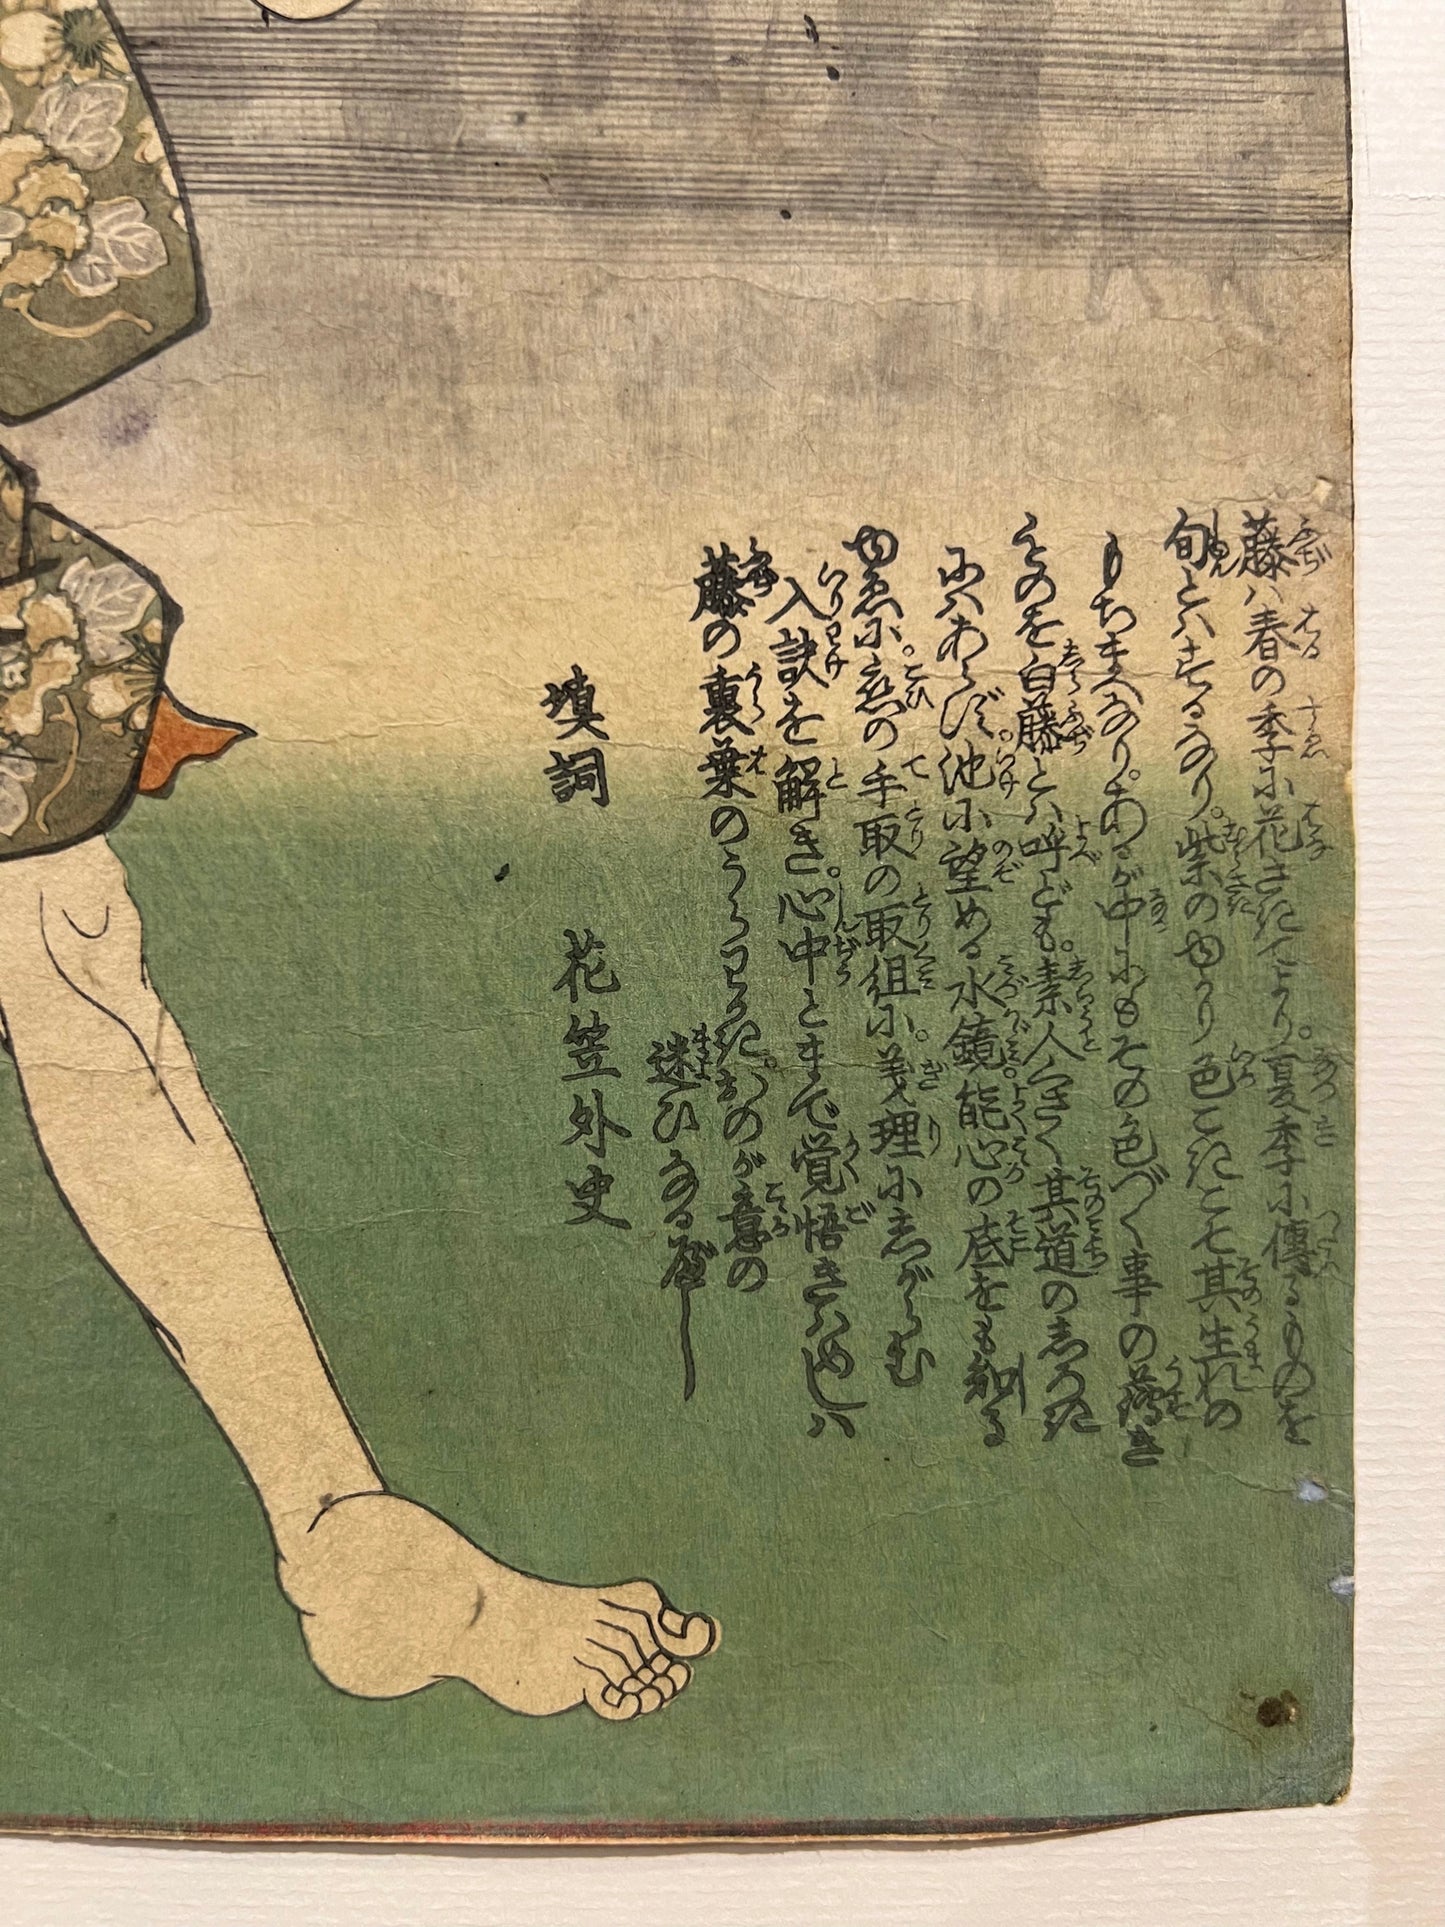 Estampe japonaise kuniyoshi serie dit du genji un homme de dos, une geisha en ombre chinoise dans un cartouche, pied droit et texte japonais